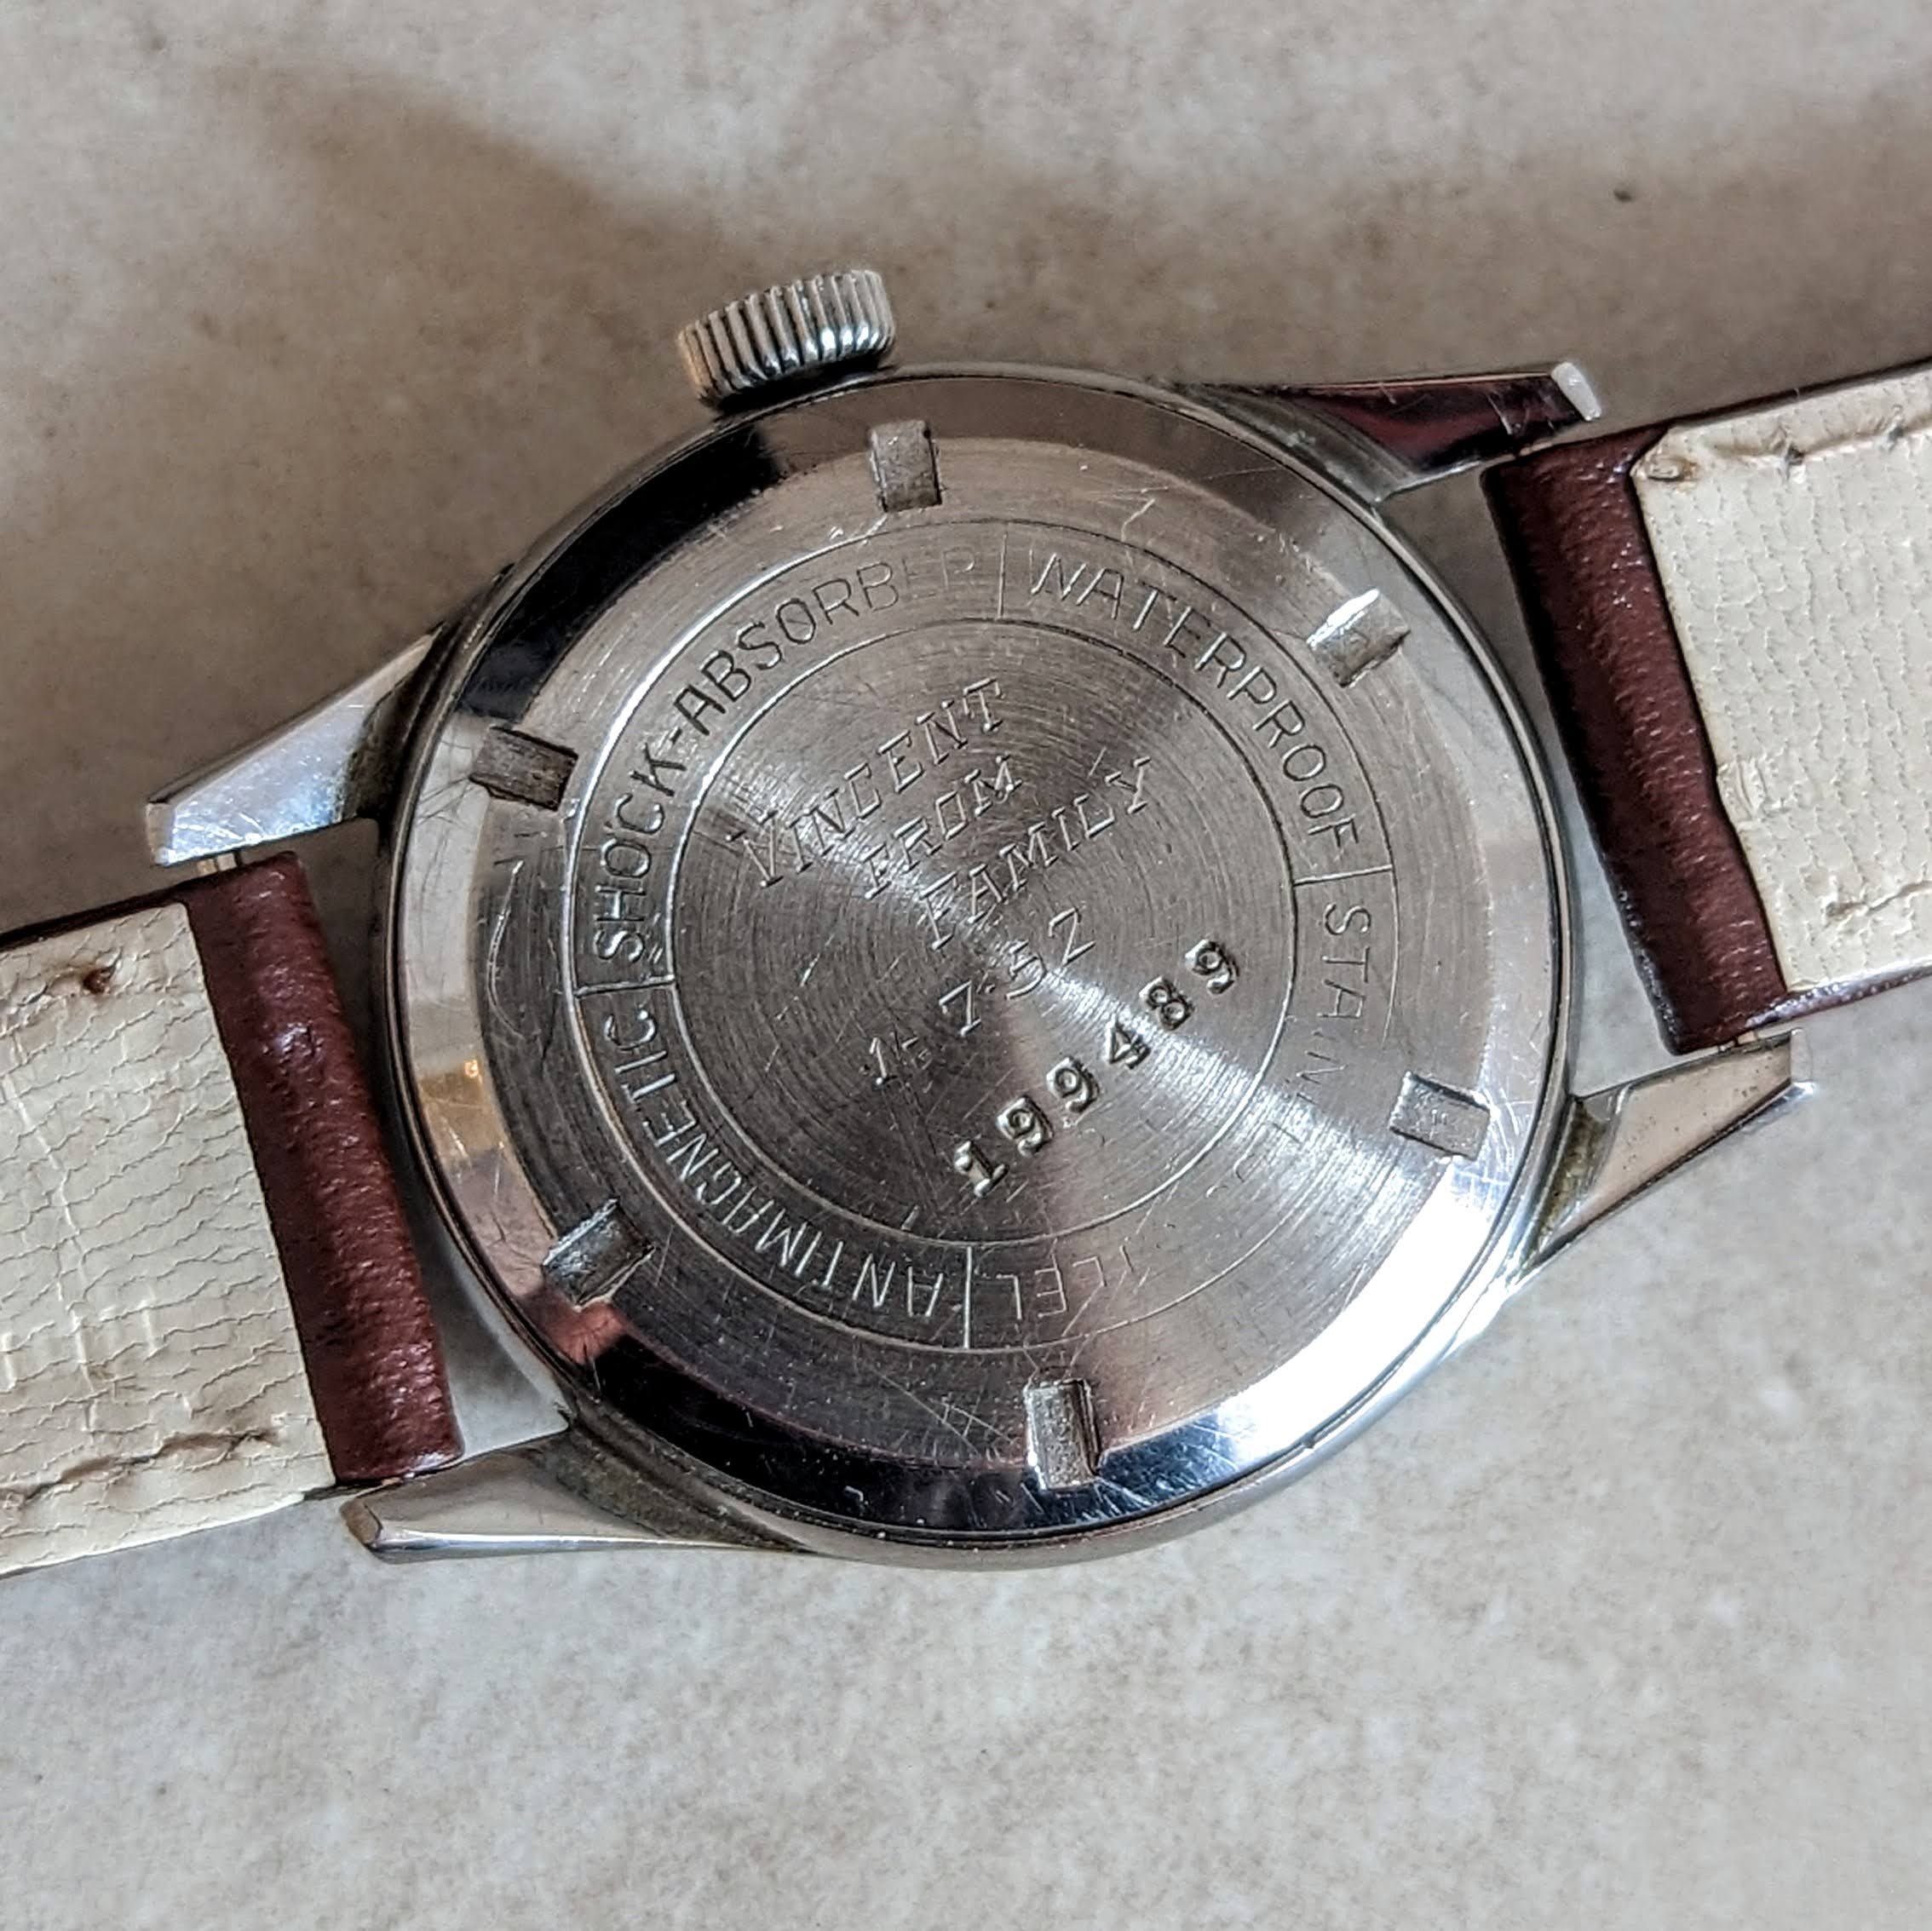 1950s STAUFFER Sport Wristwatch 17 Jewels Swiss Made Military Style Watch